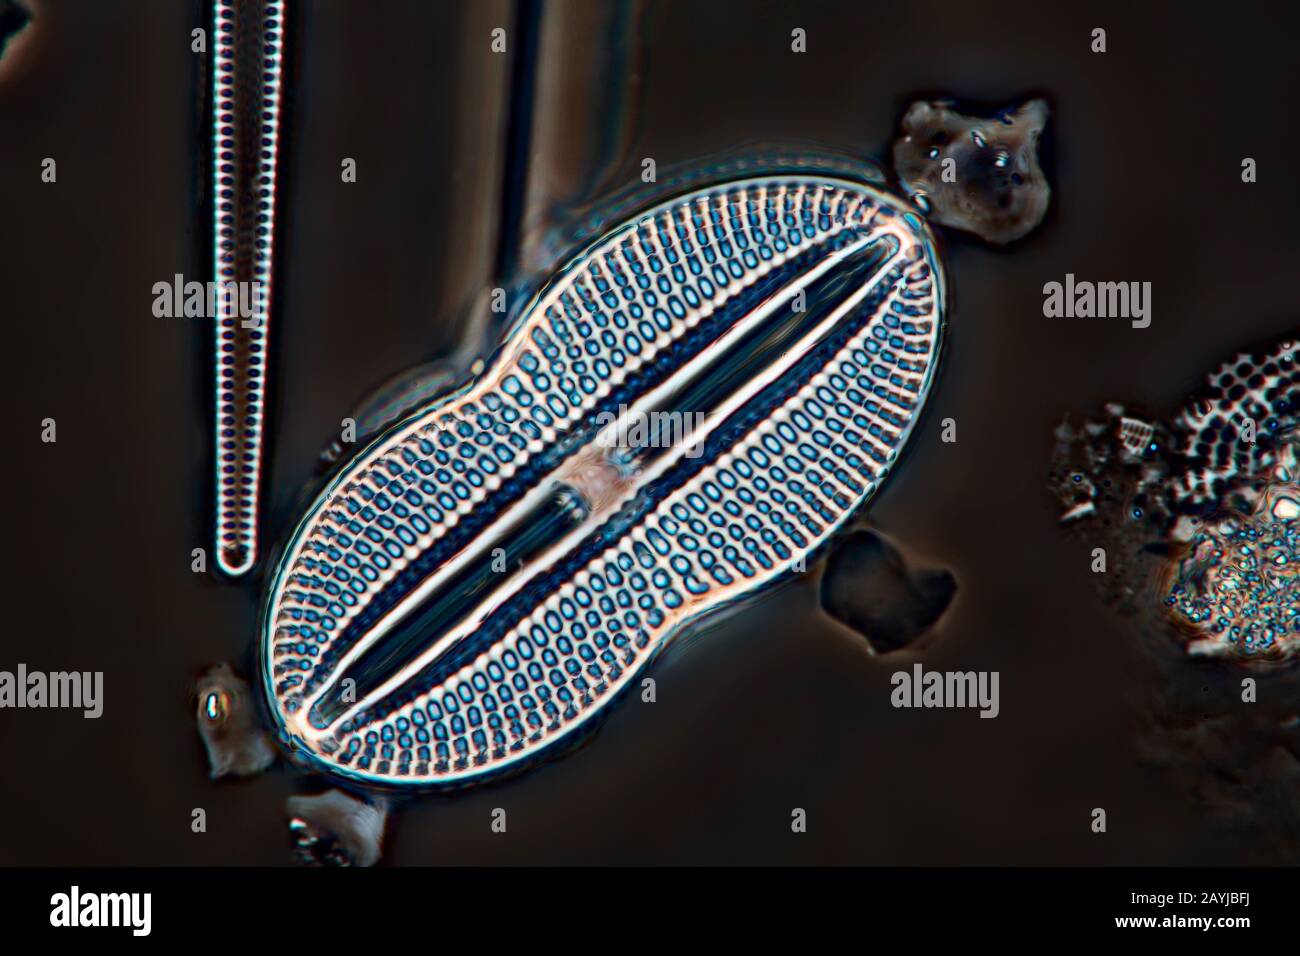 Diatomée (Diatomeae), en microscopie à contraste de phase, Allemagne Banque D'Images